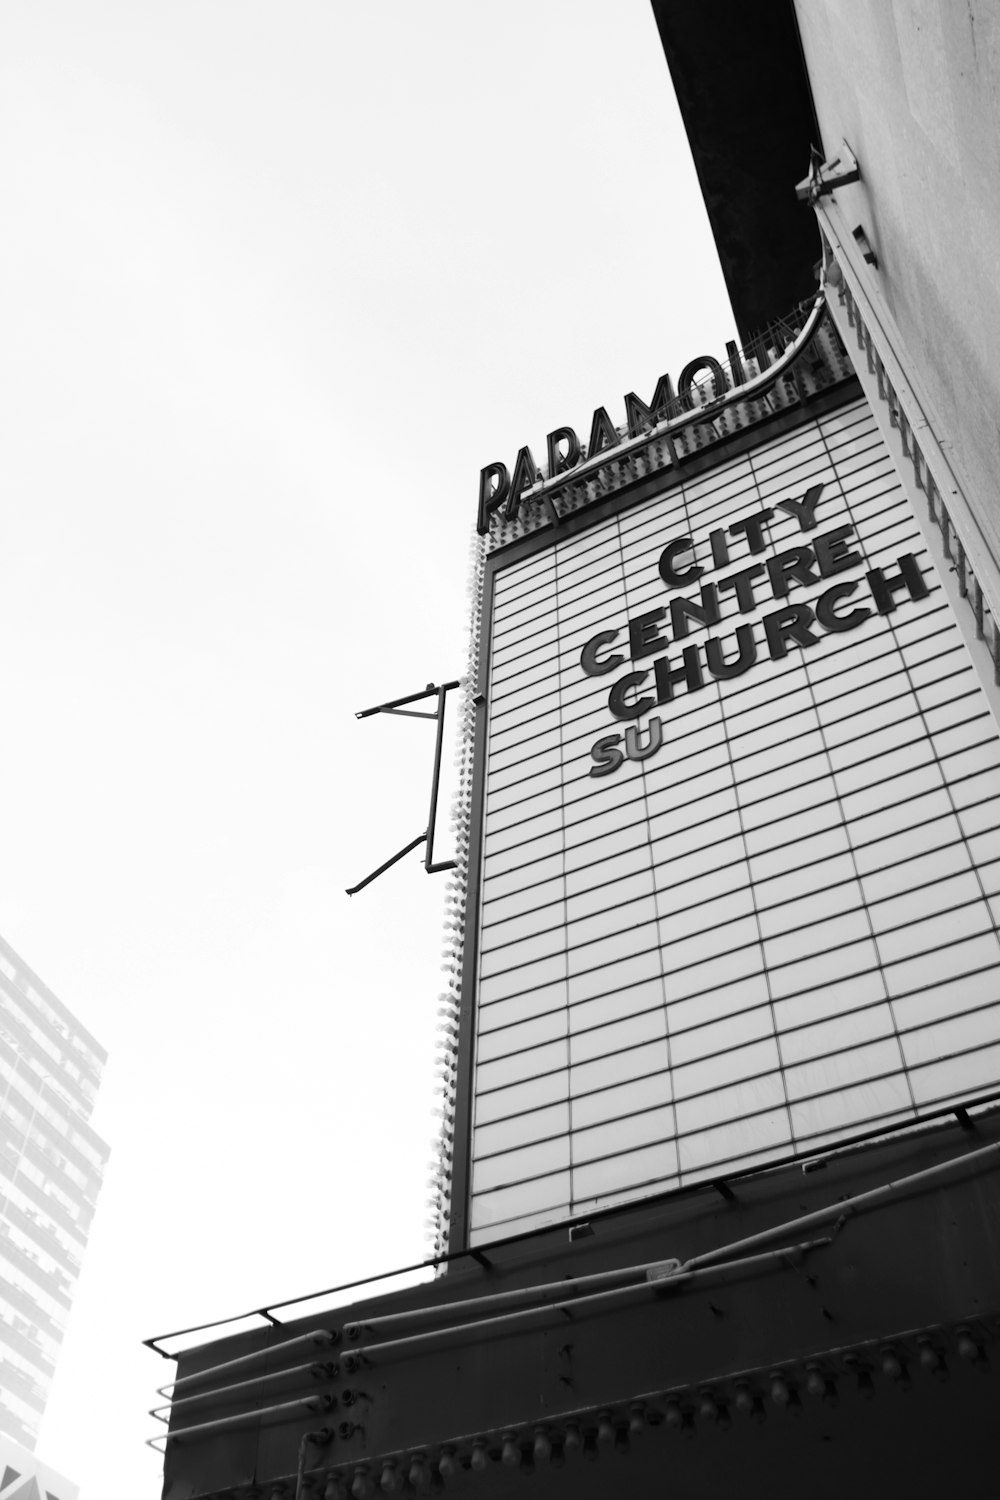 Una foto en blanco y negro del letrero de la iglesia del centro de la ciudad